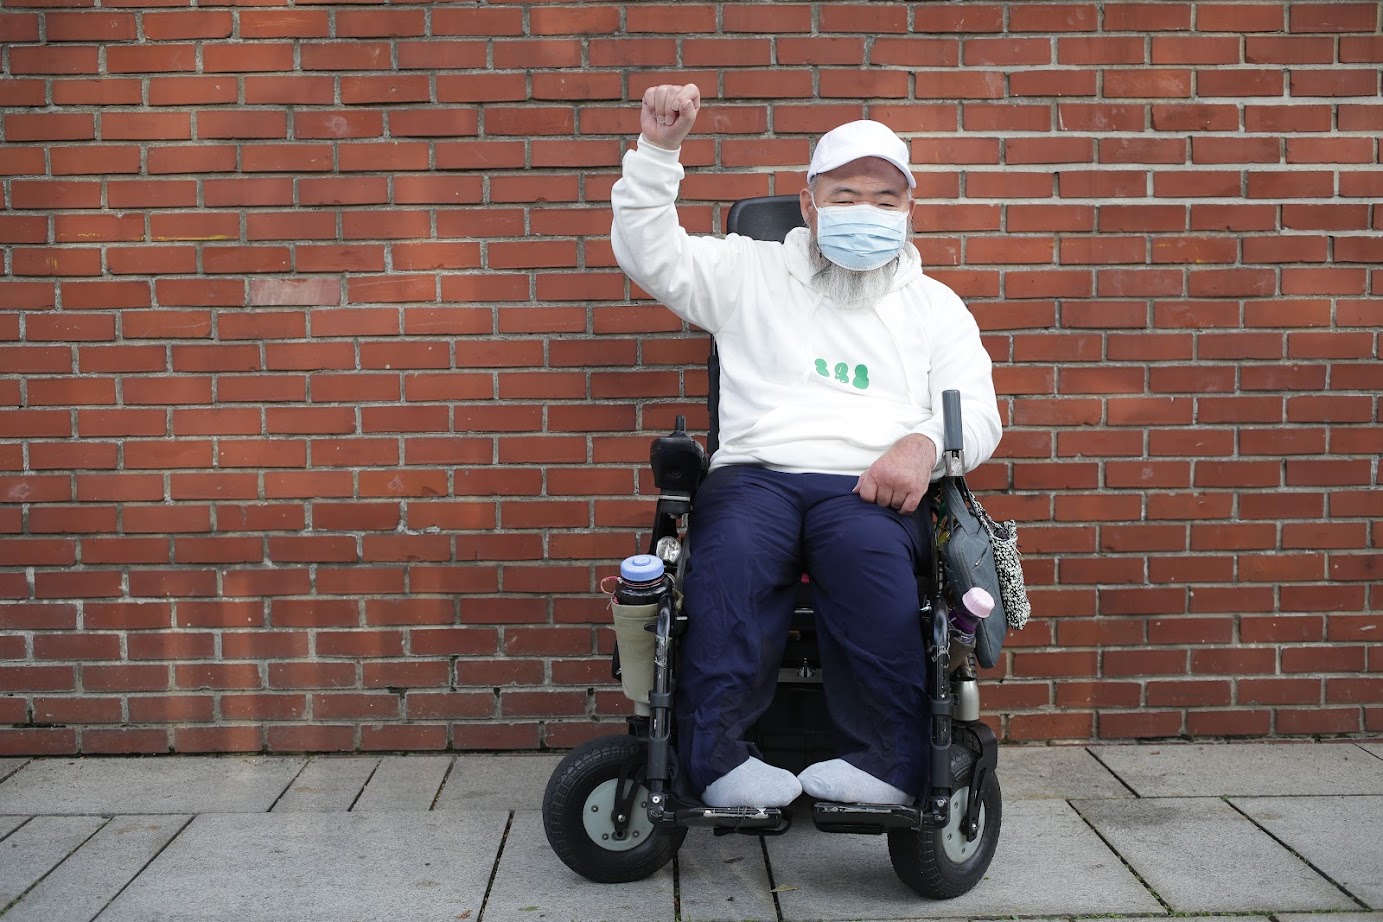 녹색 눈사람(흰색 후드) 을 입고 휠체어에 앉아 투쟁포즈 (한손을 올린) 노들장애인야학 교장선생님